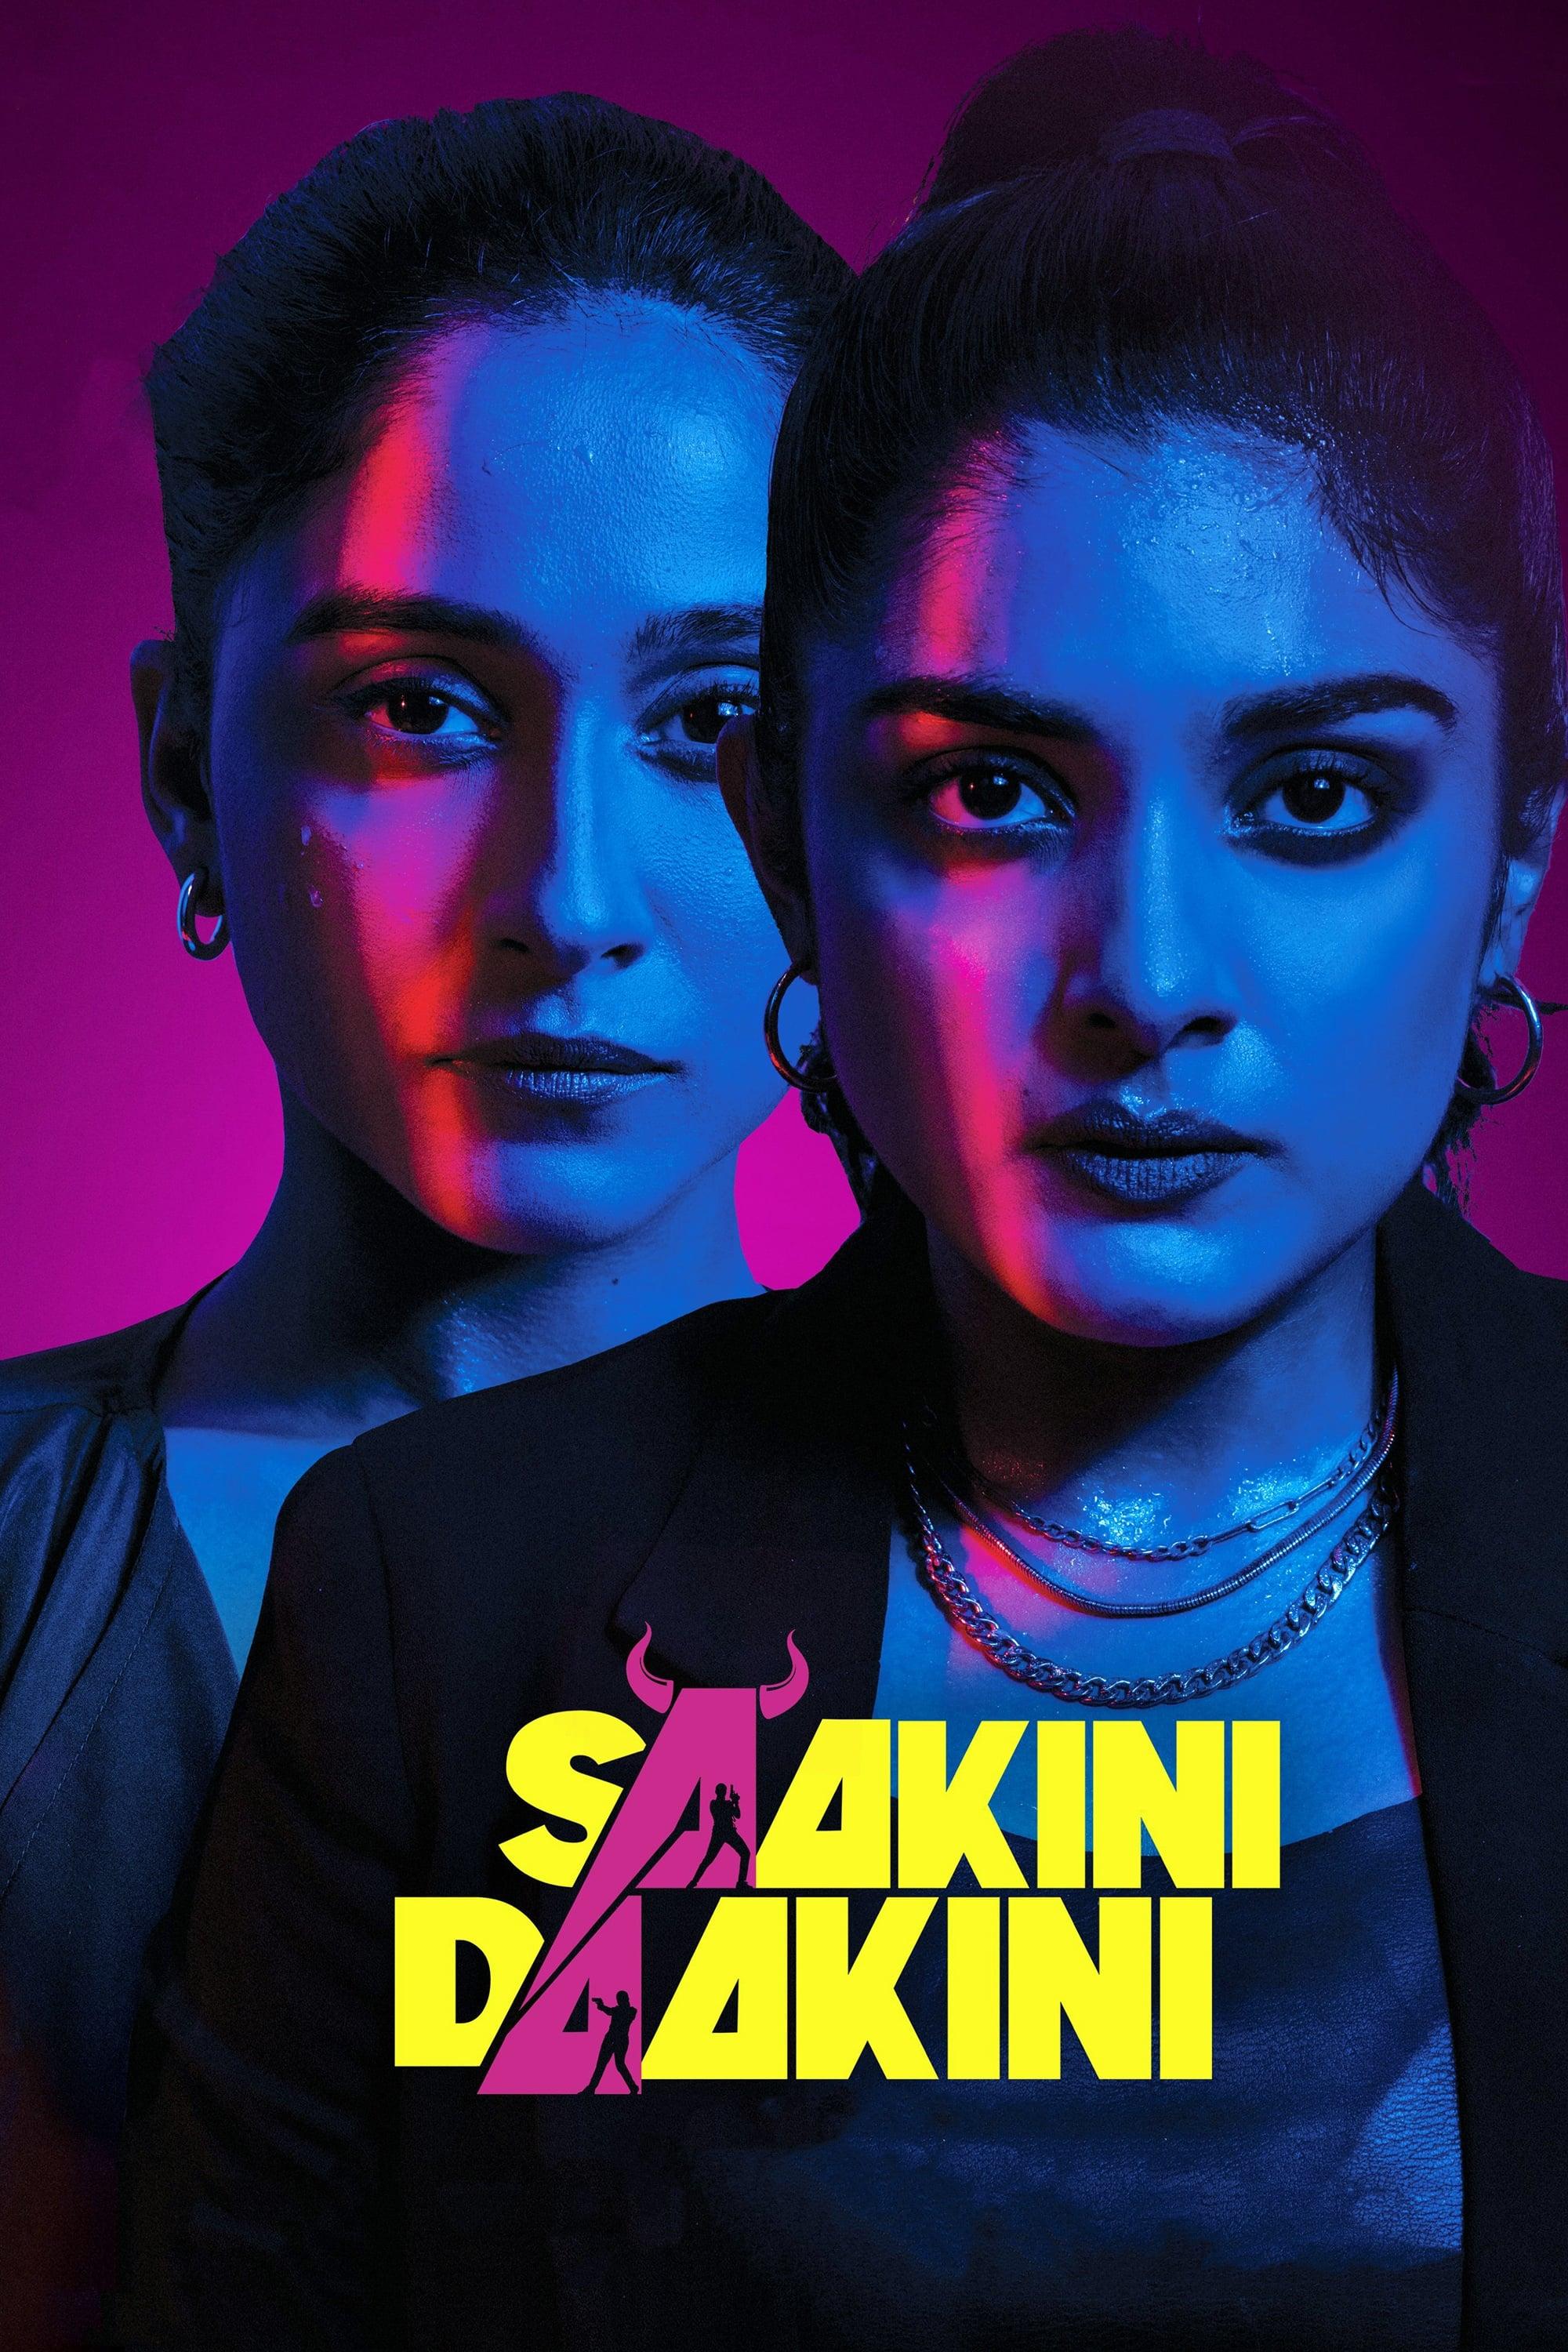 Saakini Daakini poster